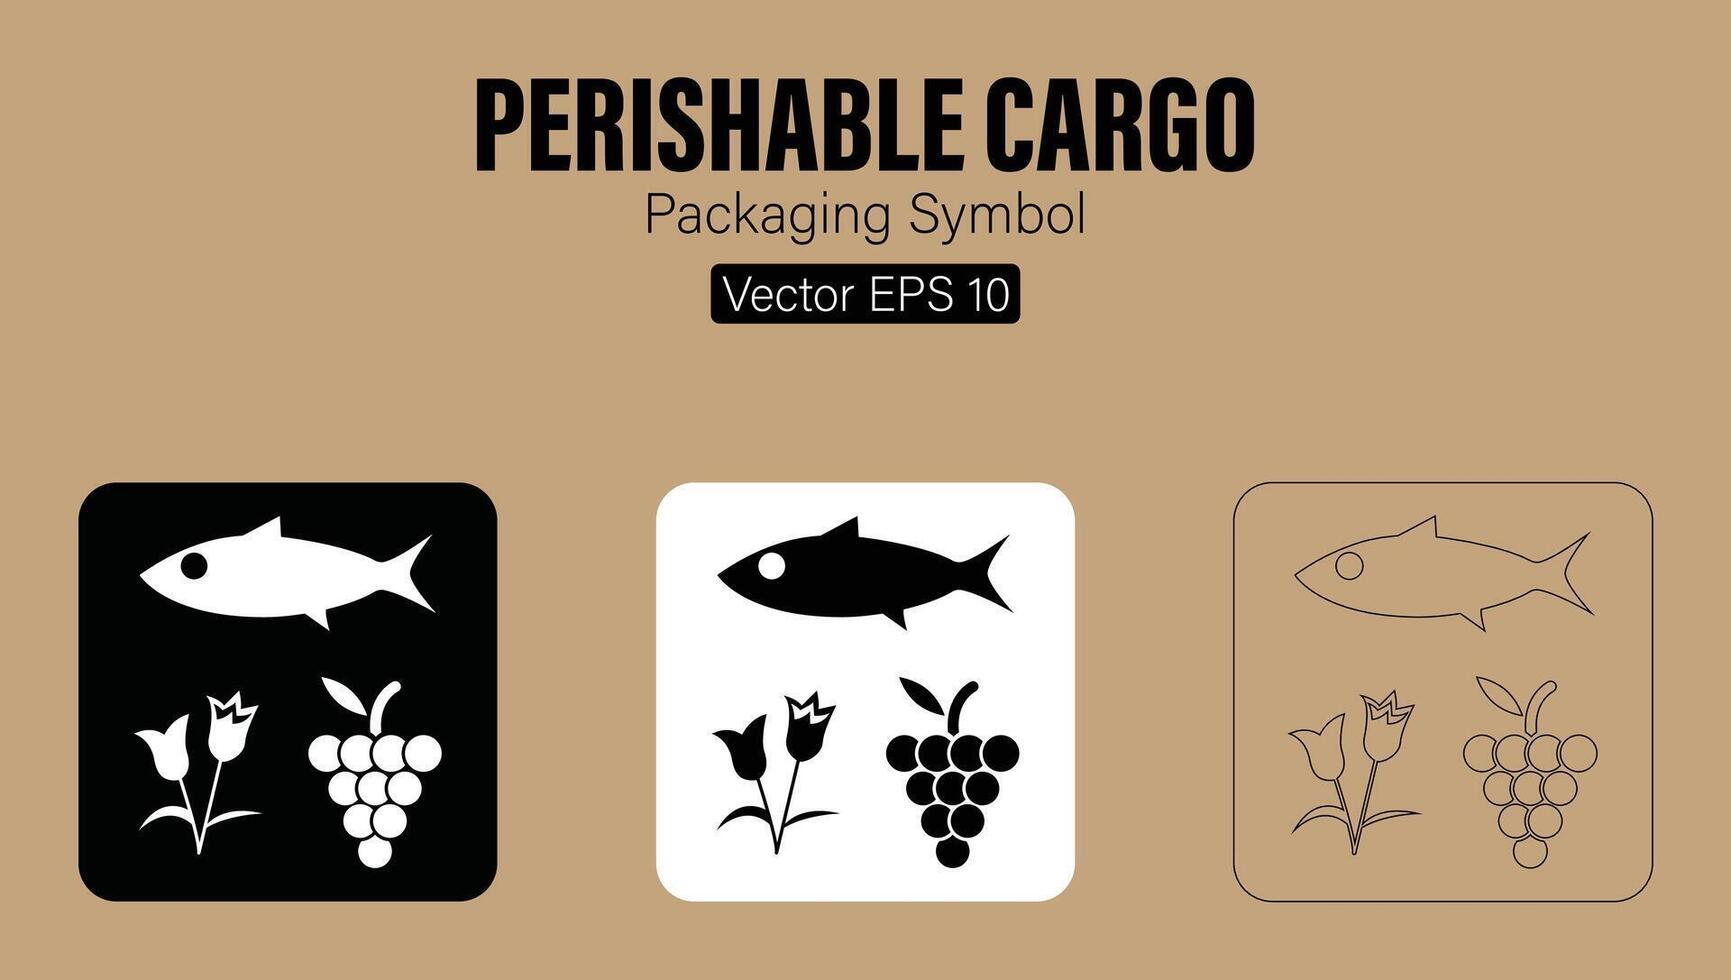 beperkt houdbaar lading verpakking symbool vector